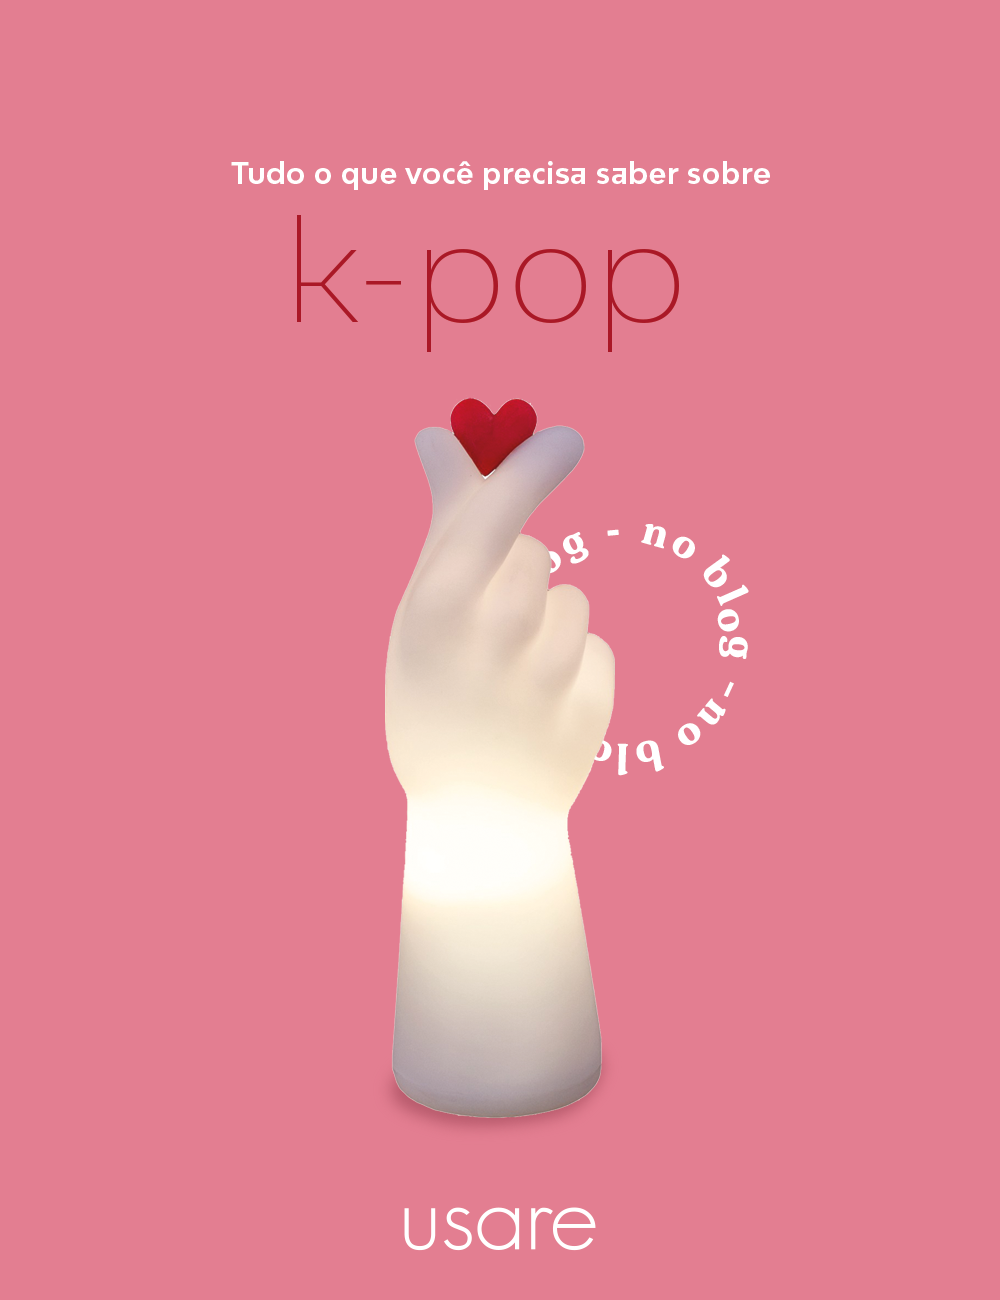 O que é o K-pop, ou pop coreano?